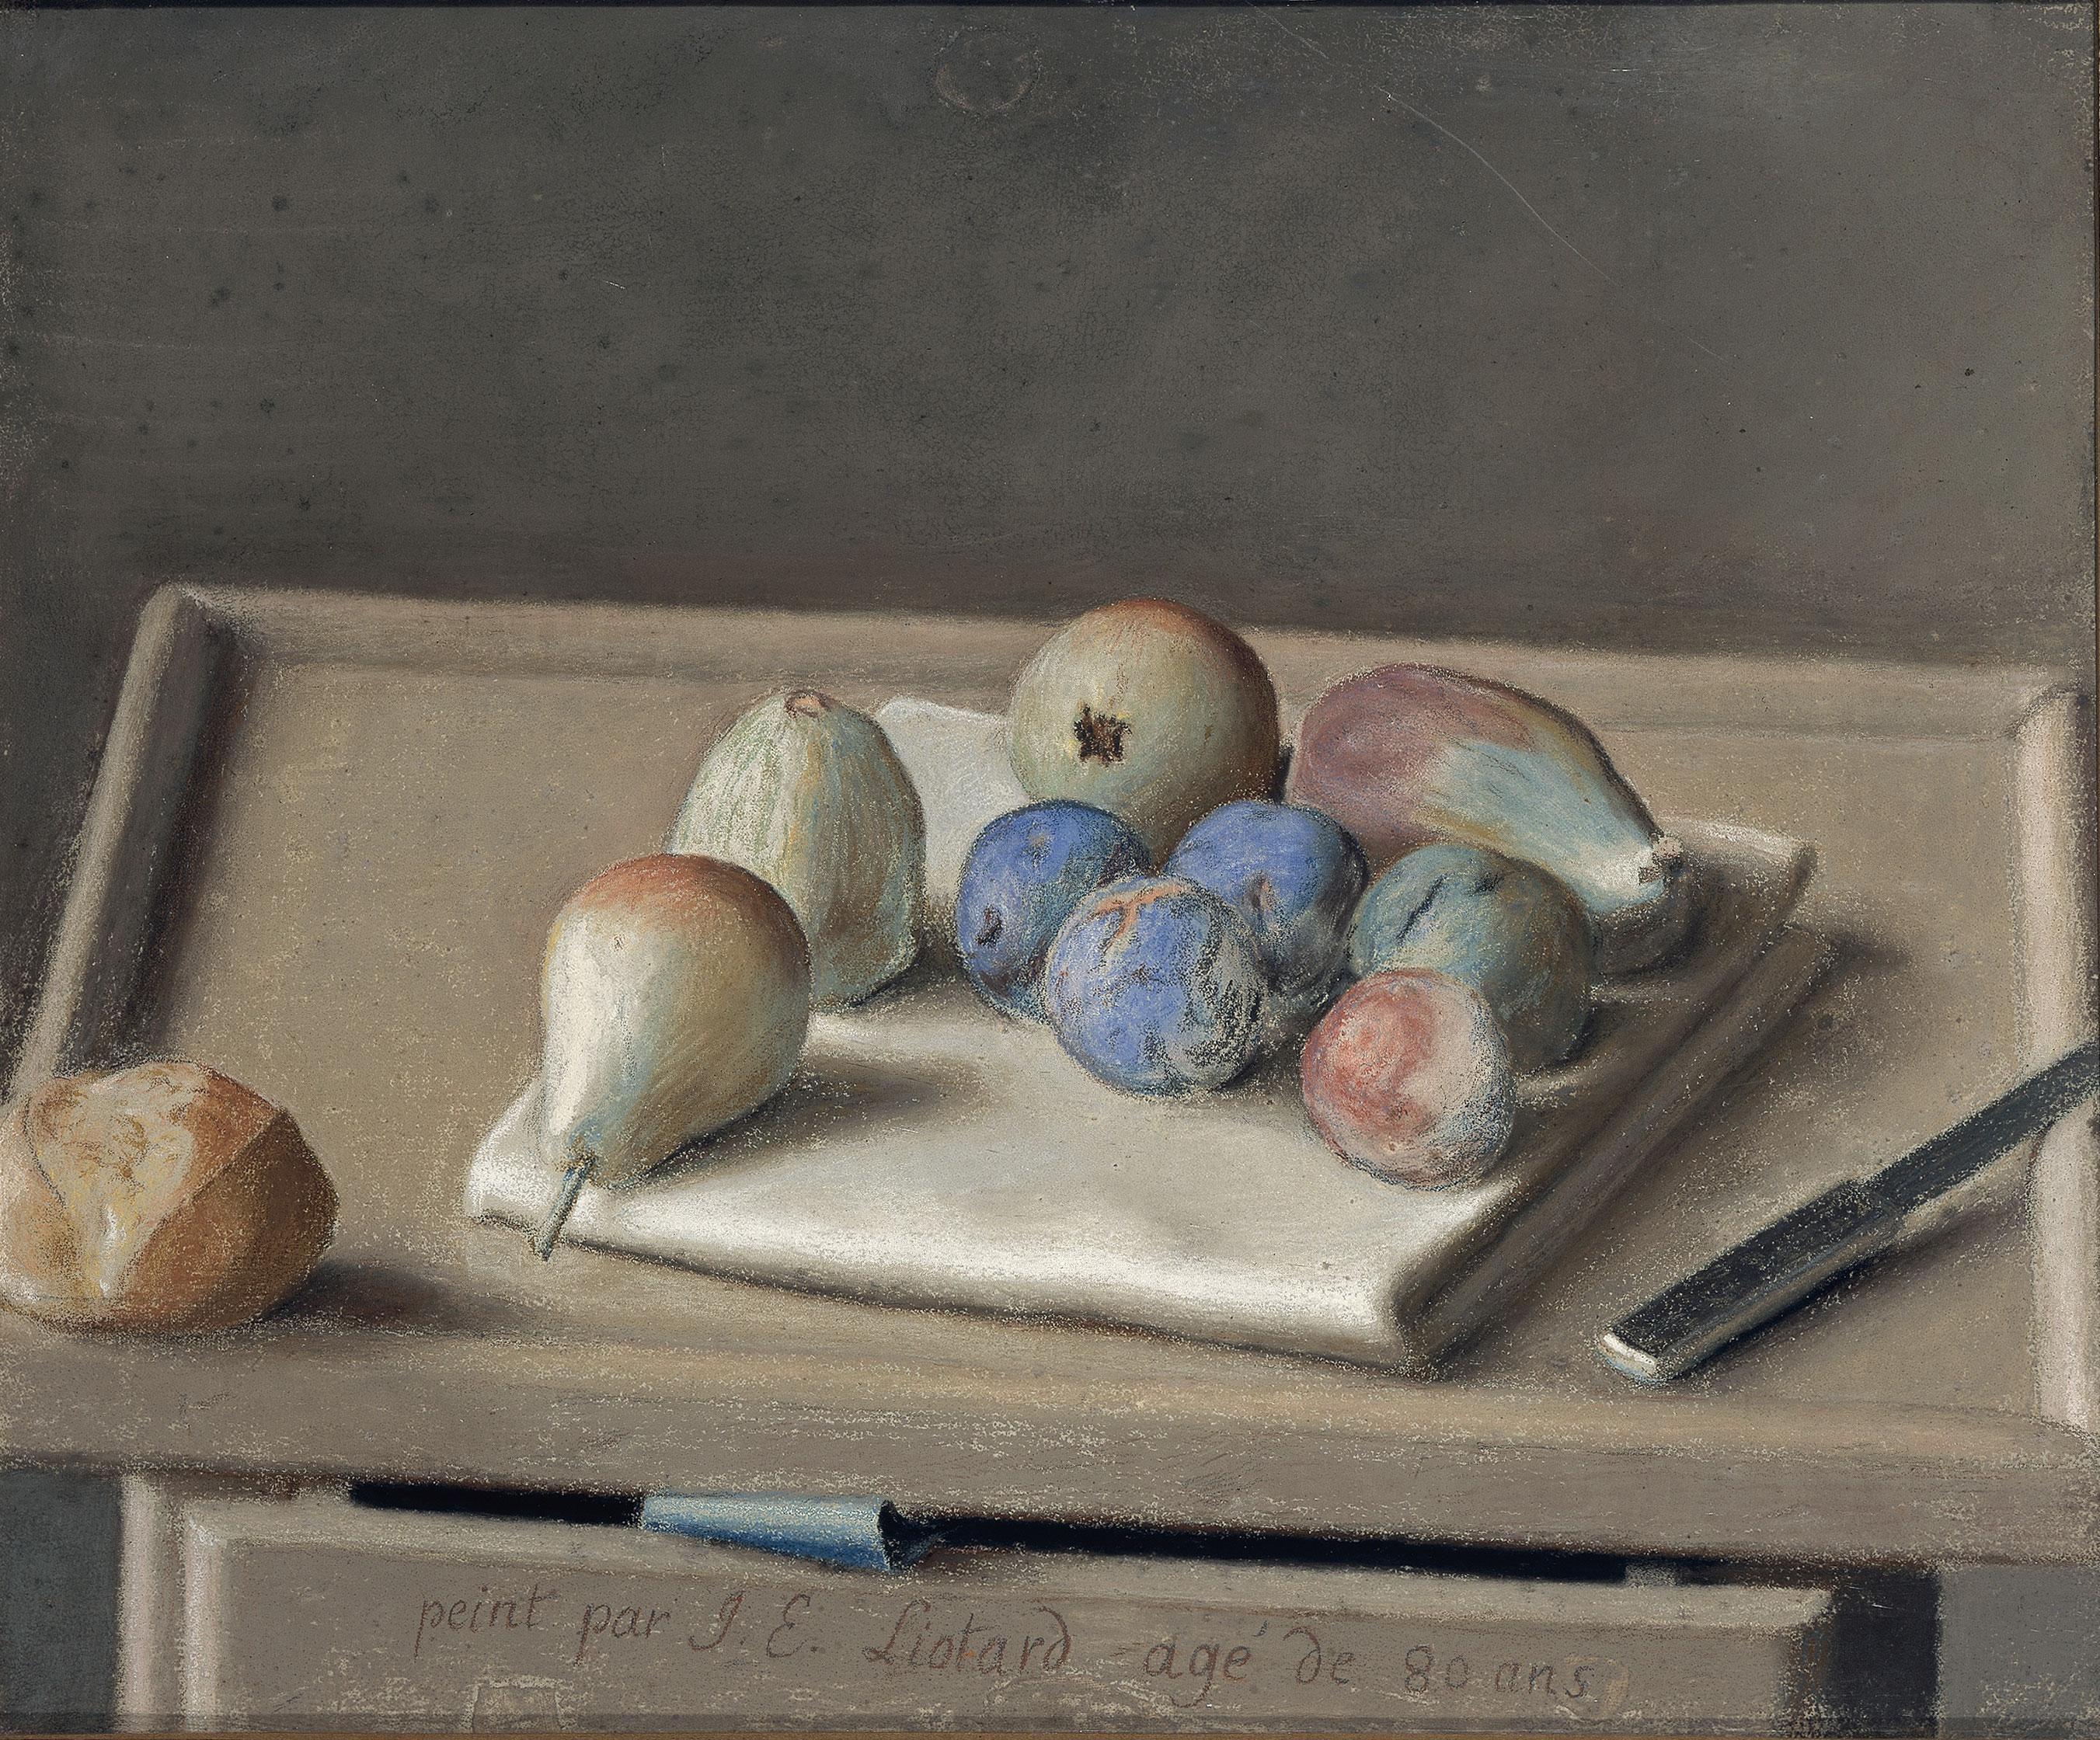 Jean-Etienne Liotard (1702-1789). Nature morte. Fruits sur une serviette, un petit pain, un couteau. 1782. [Cabinet d’arts graphiques du MAH, Genève - B. Jacot-Descombes]